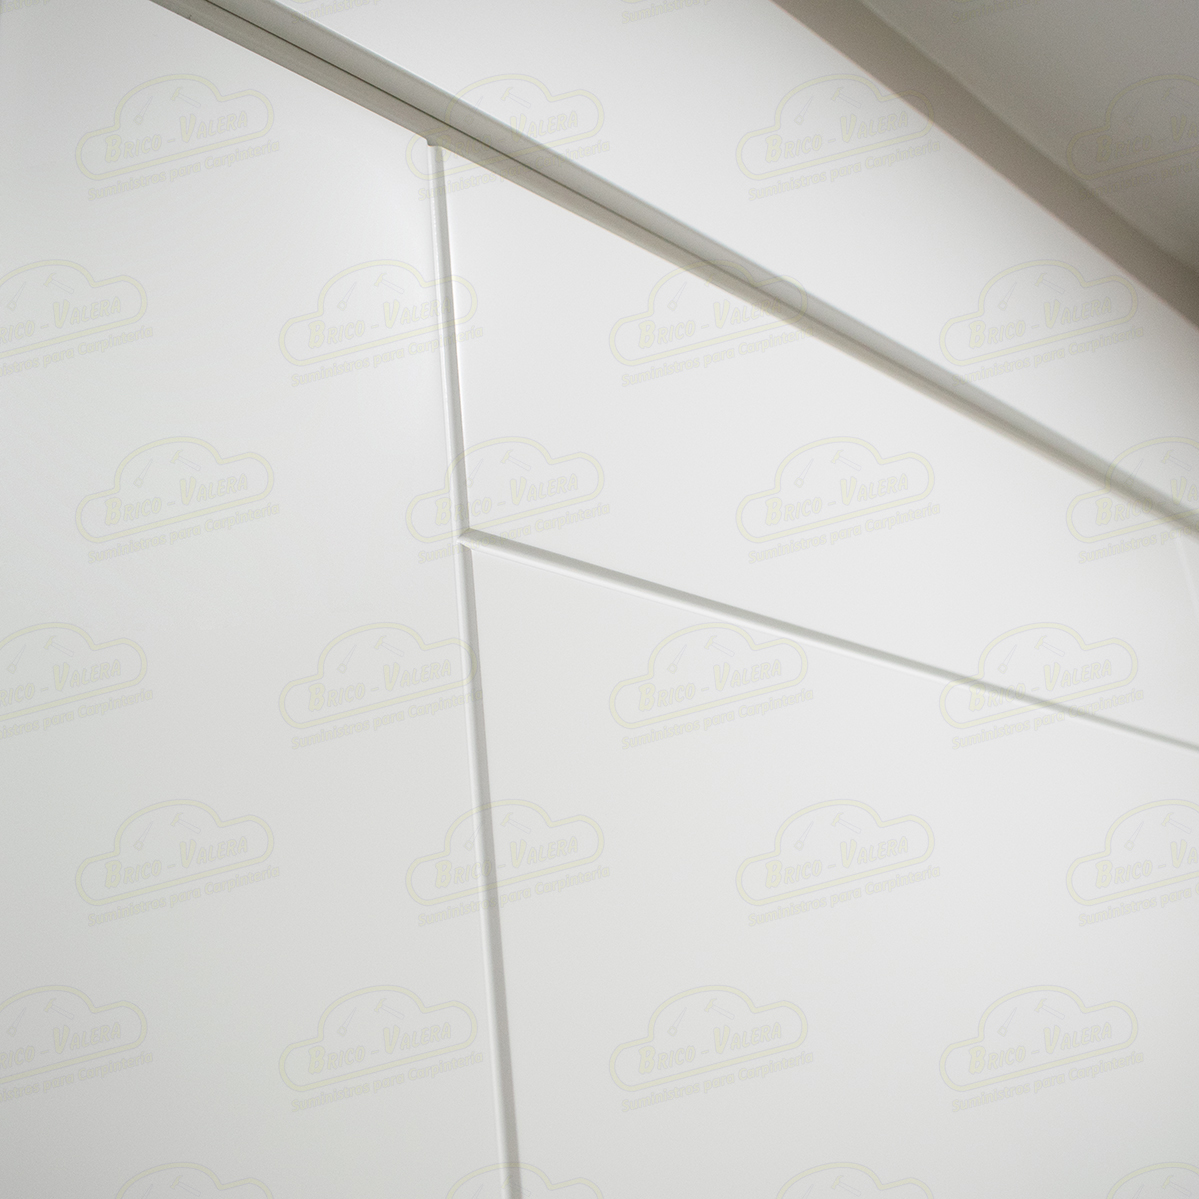 Puerta Premium P110 Lacada Blanca de Interior en Block (Maciza)